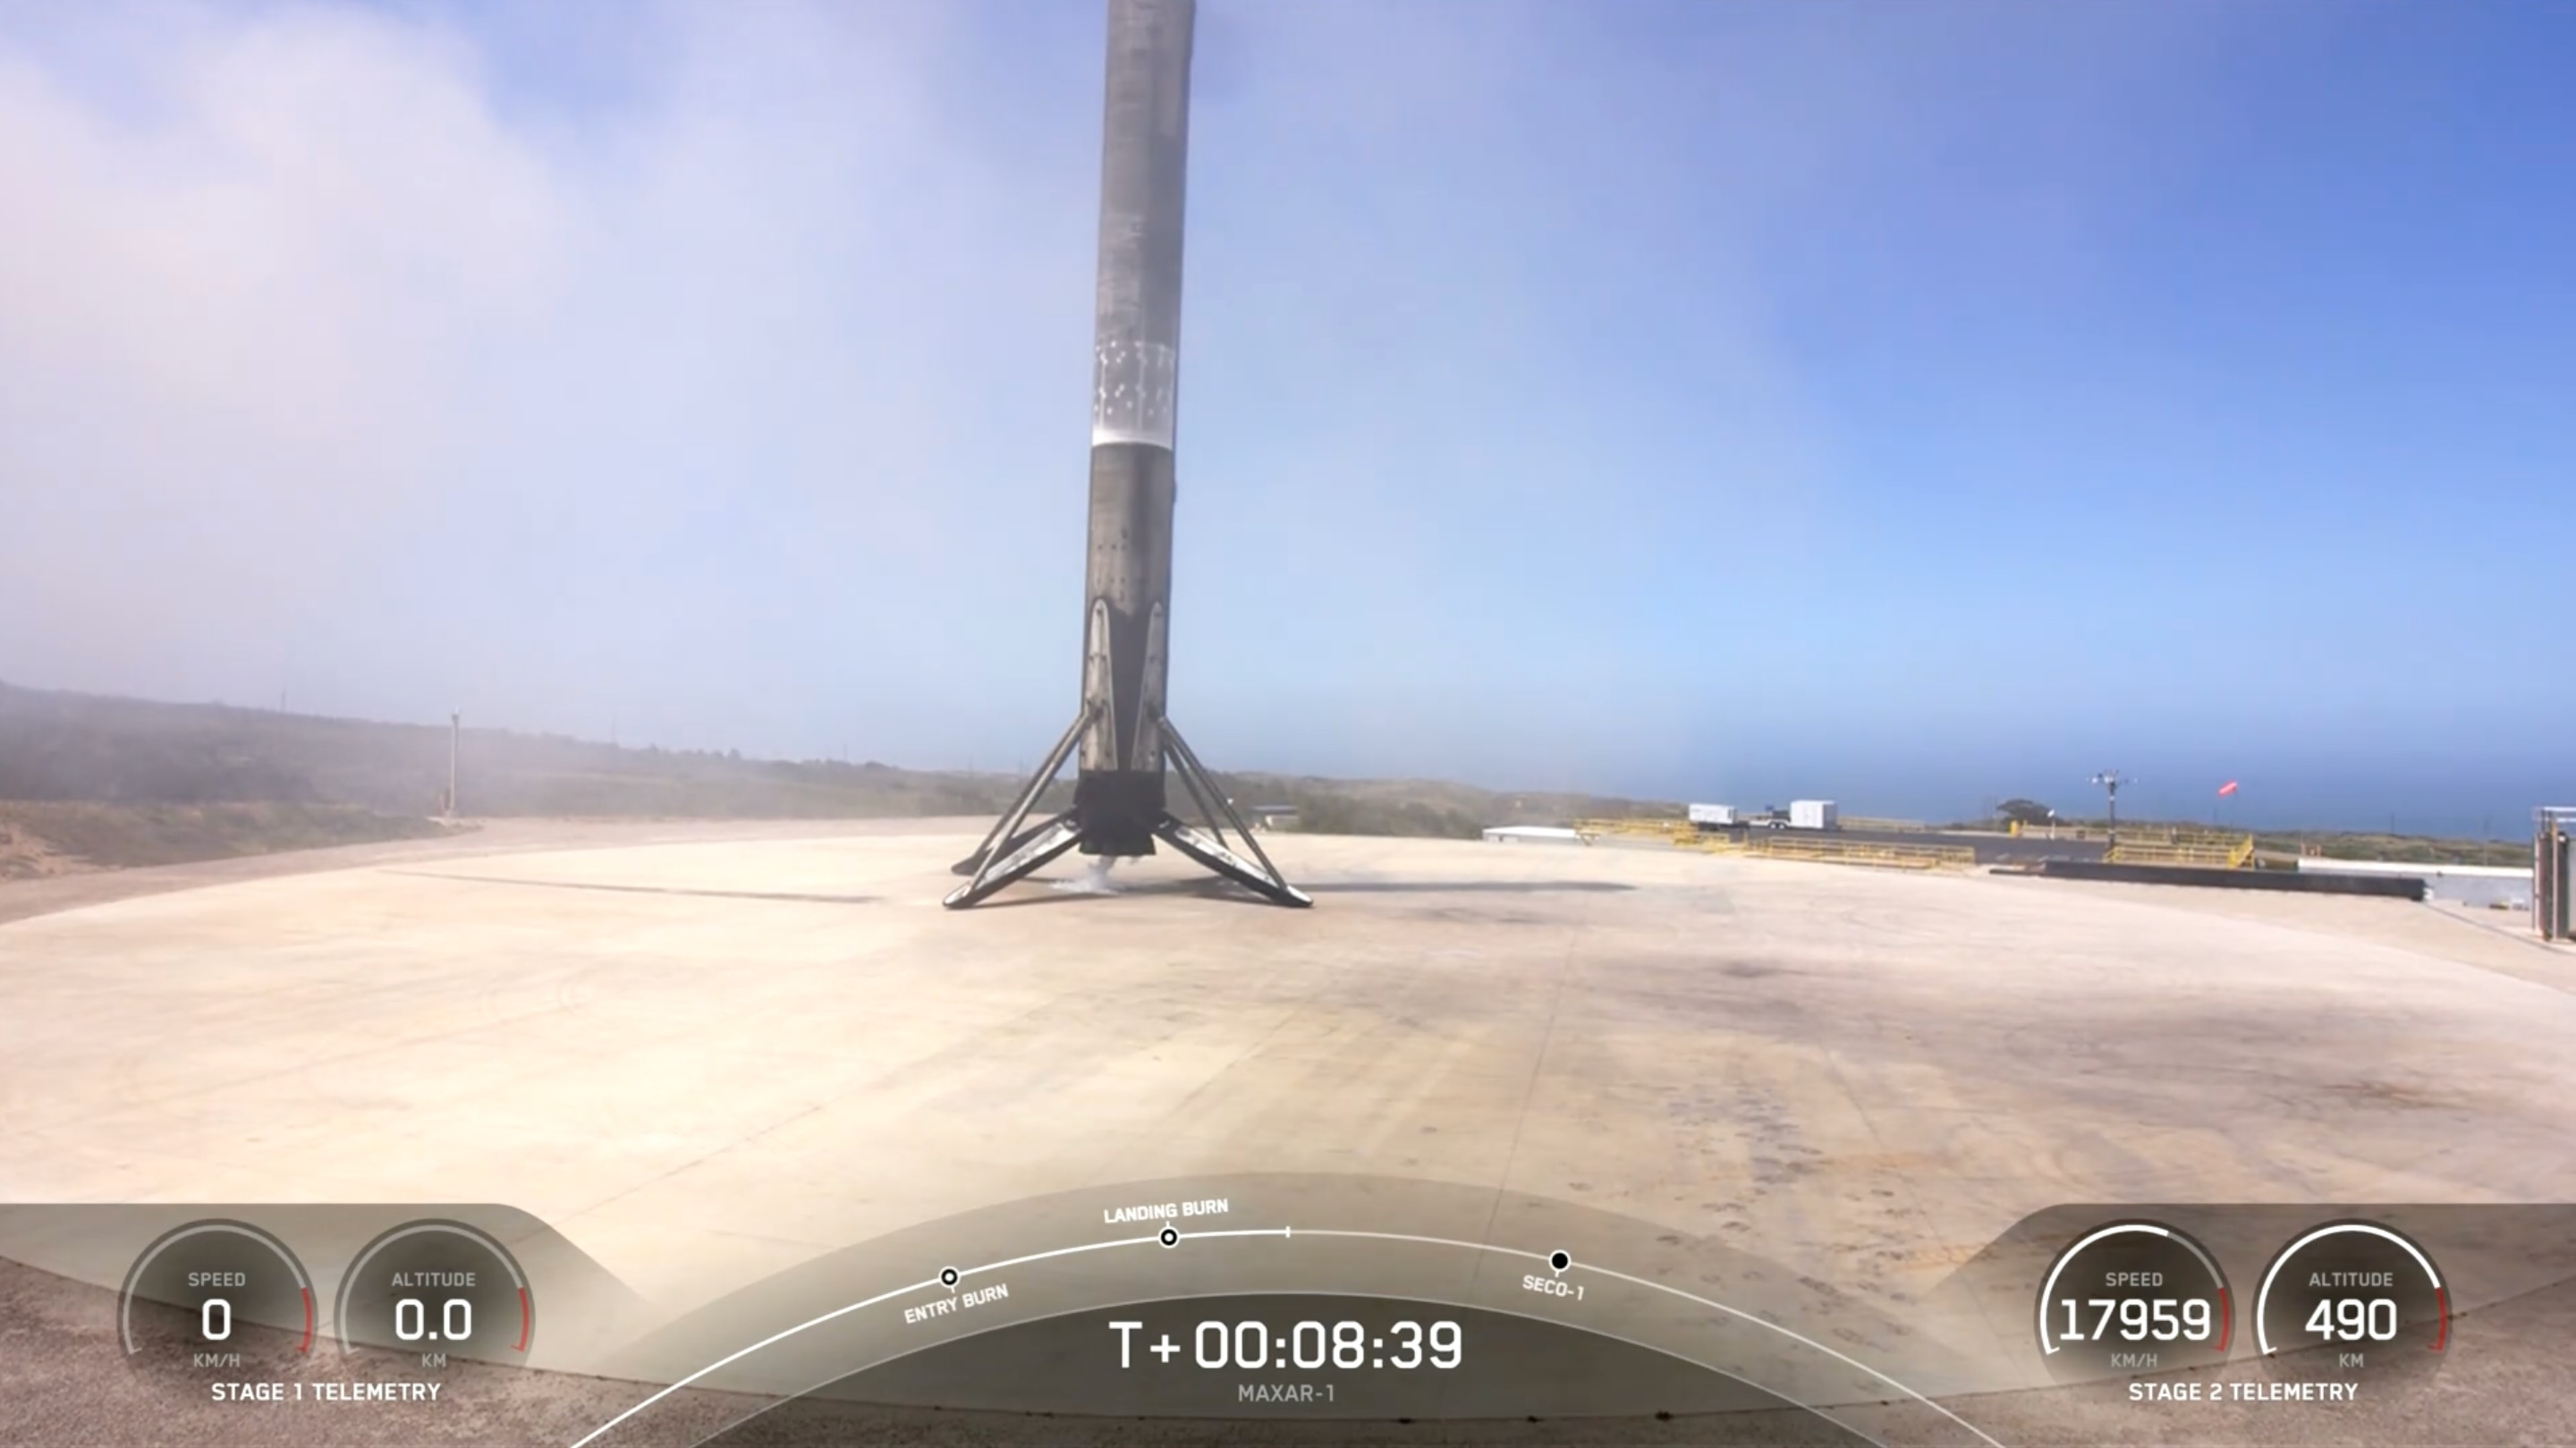 Die erste Stufe einer schwarz-weißen SpaceX Falcon 9-Rakete wird kurz nach der Landung auf dem Landeplatz platziert.